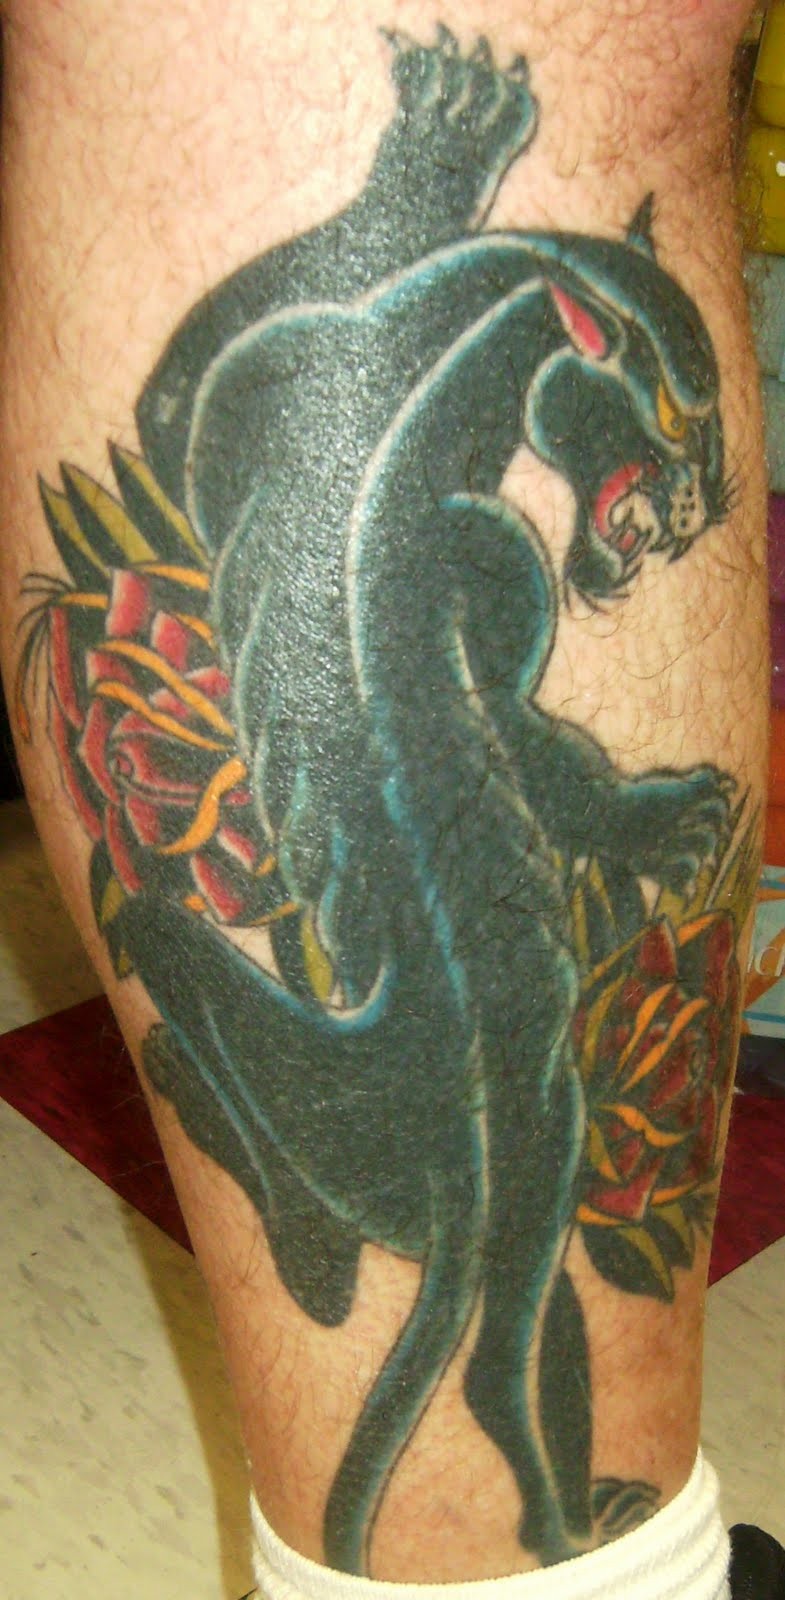 Tatuaggio colorato sulla gamba la pantera nera & i fiori